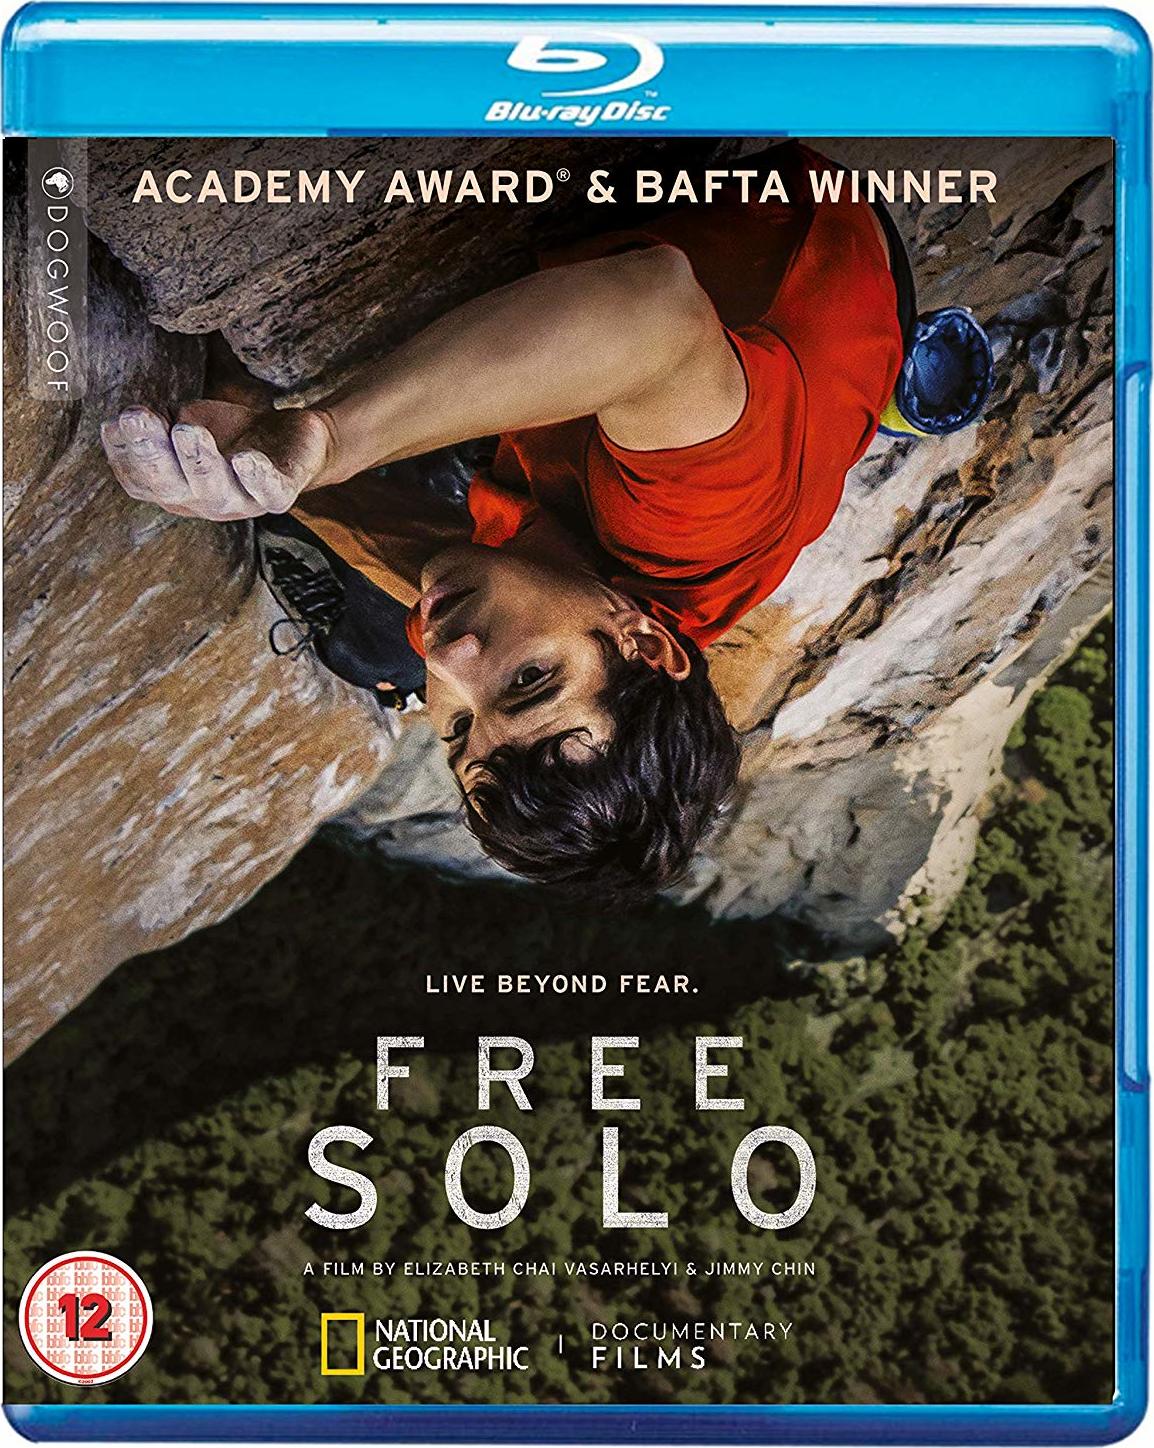 徒手攀岩/赤手登峰(港) [DIY简繁英特效字幕] *第91届奥斯卡金像奖 最佳纪录长片*  Free Solo 2018 Blu-ray 1080p AVC DTS-HD MA 5.1-A236P5@OurBits    [22.71 GB]-1.jpg